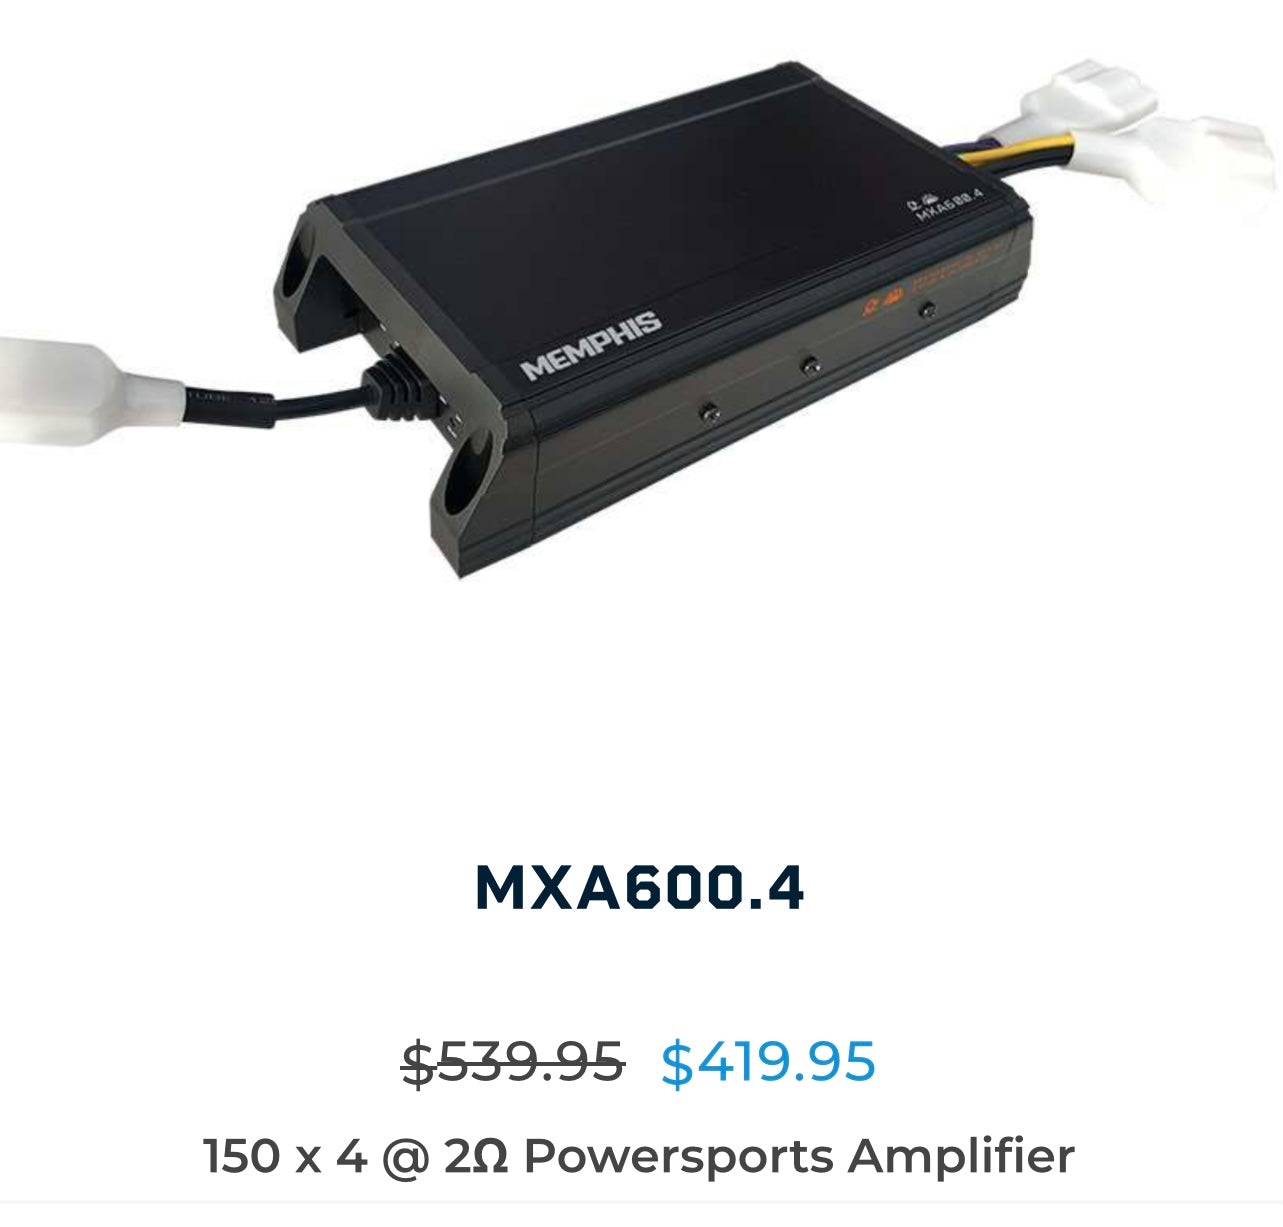 Memphis MXA600.4